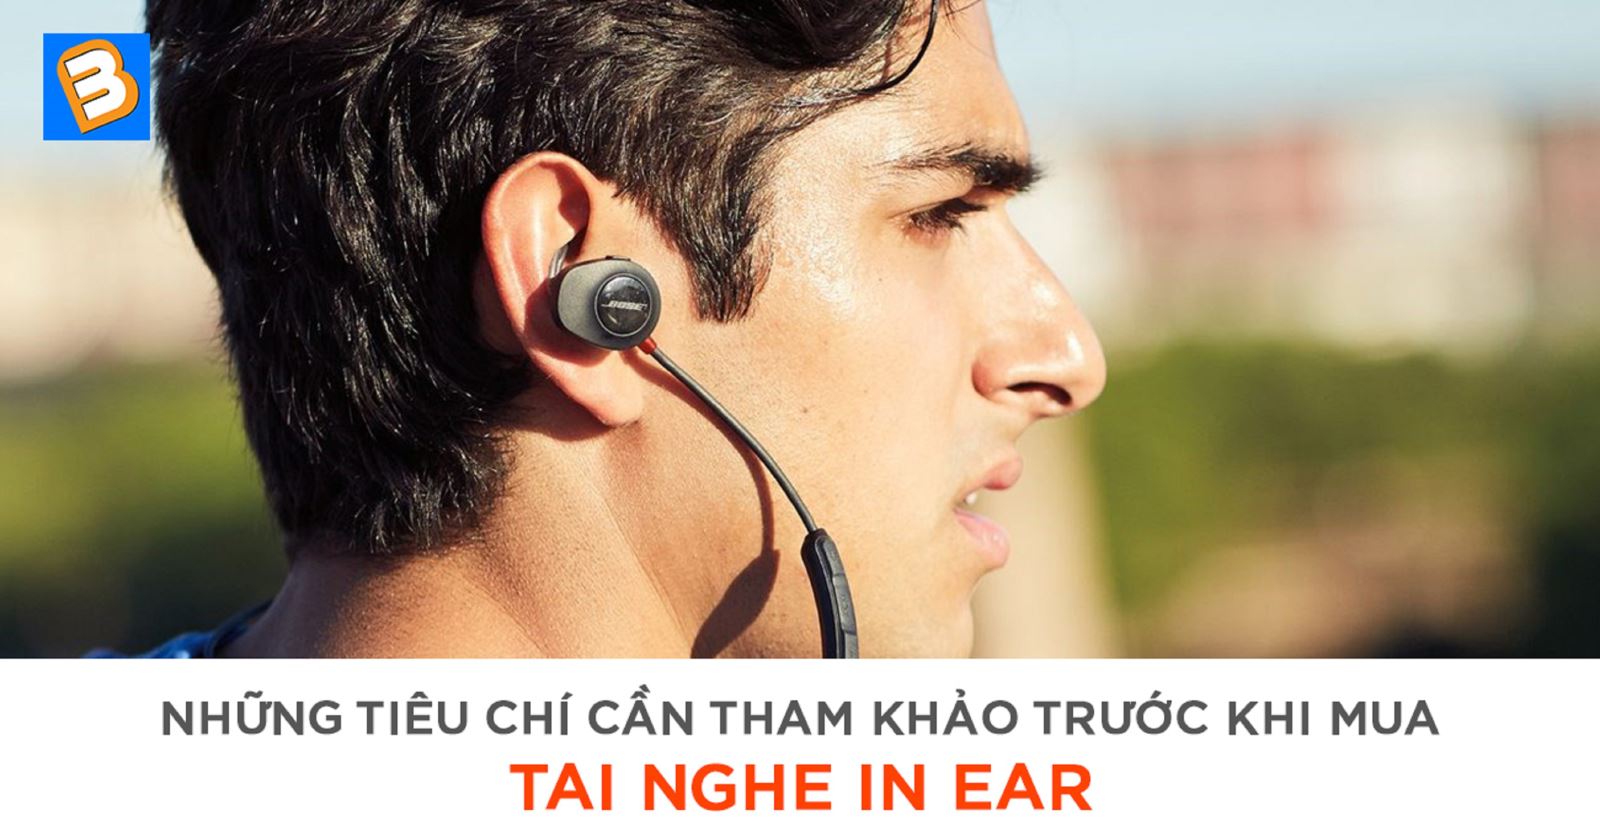 Những tiêu chí cần tham khảo trước khi mua tai nghe in ear